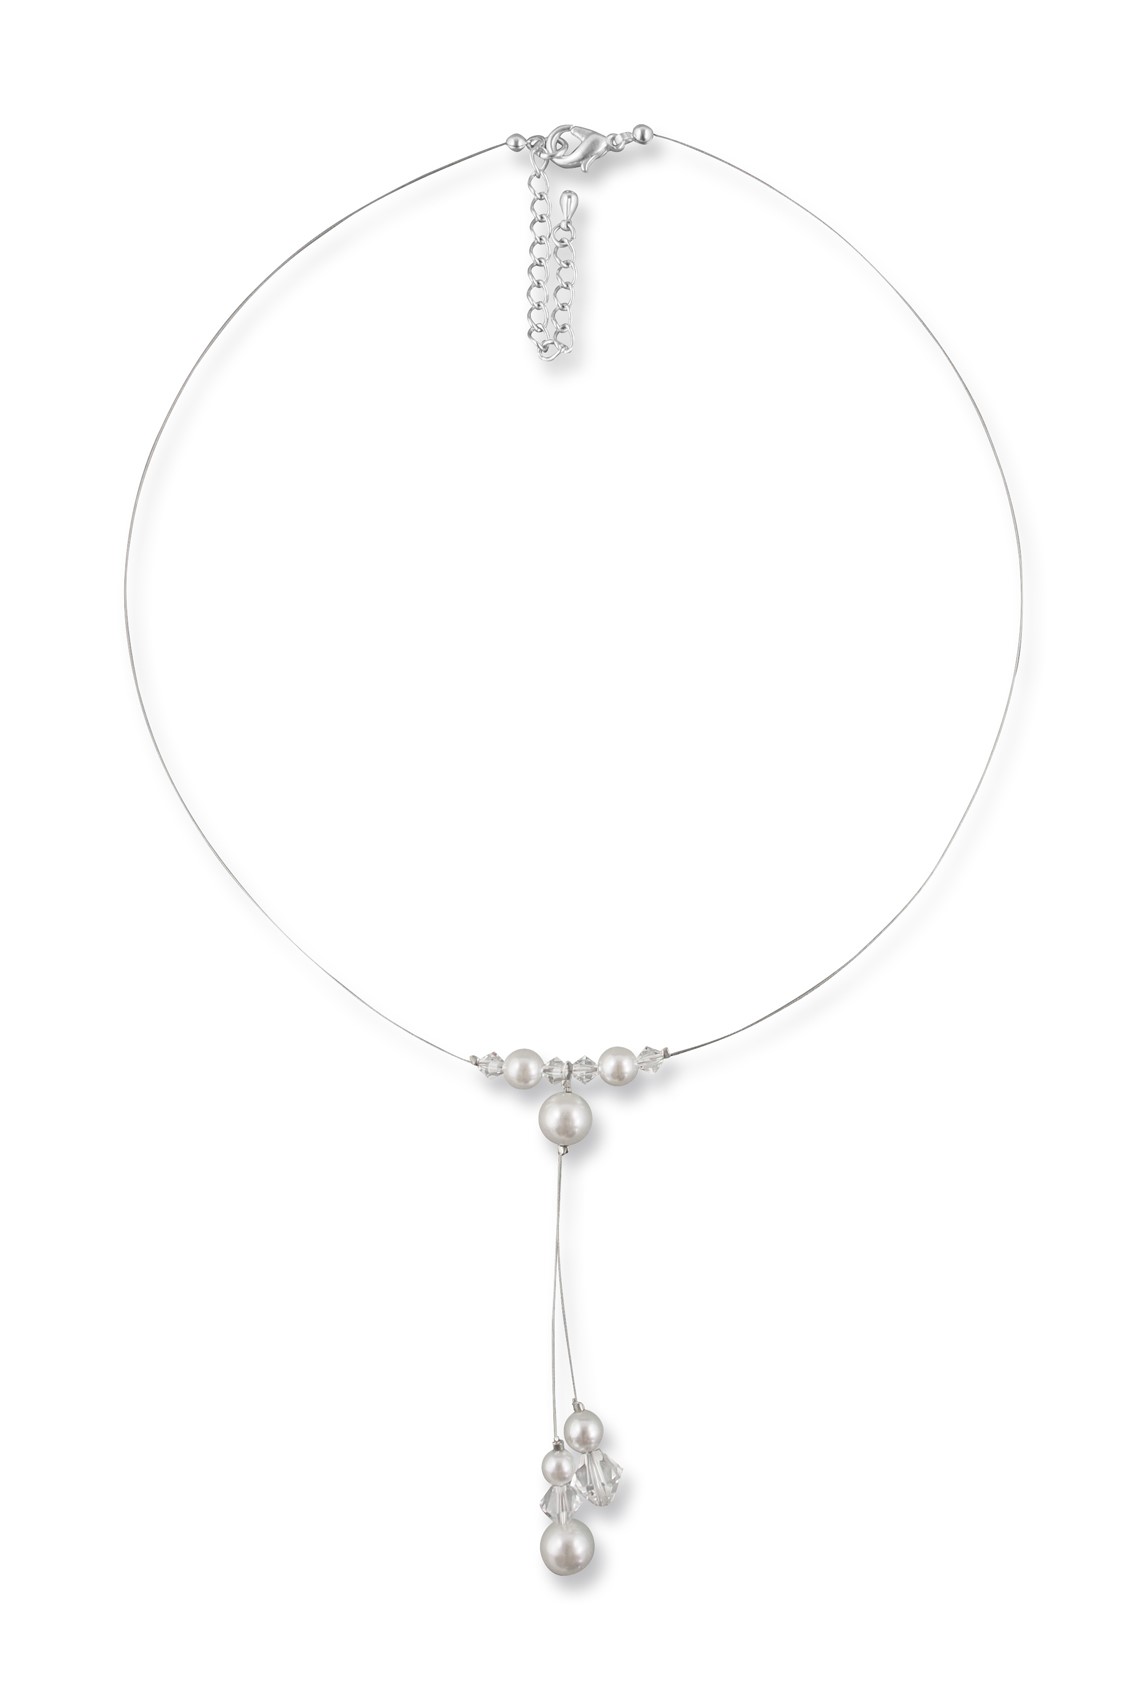 Bild von Perlenkette mit Anhänger Ina 925 Silber